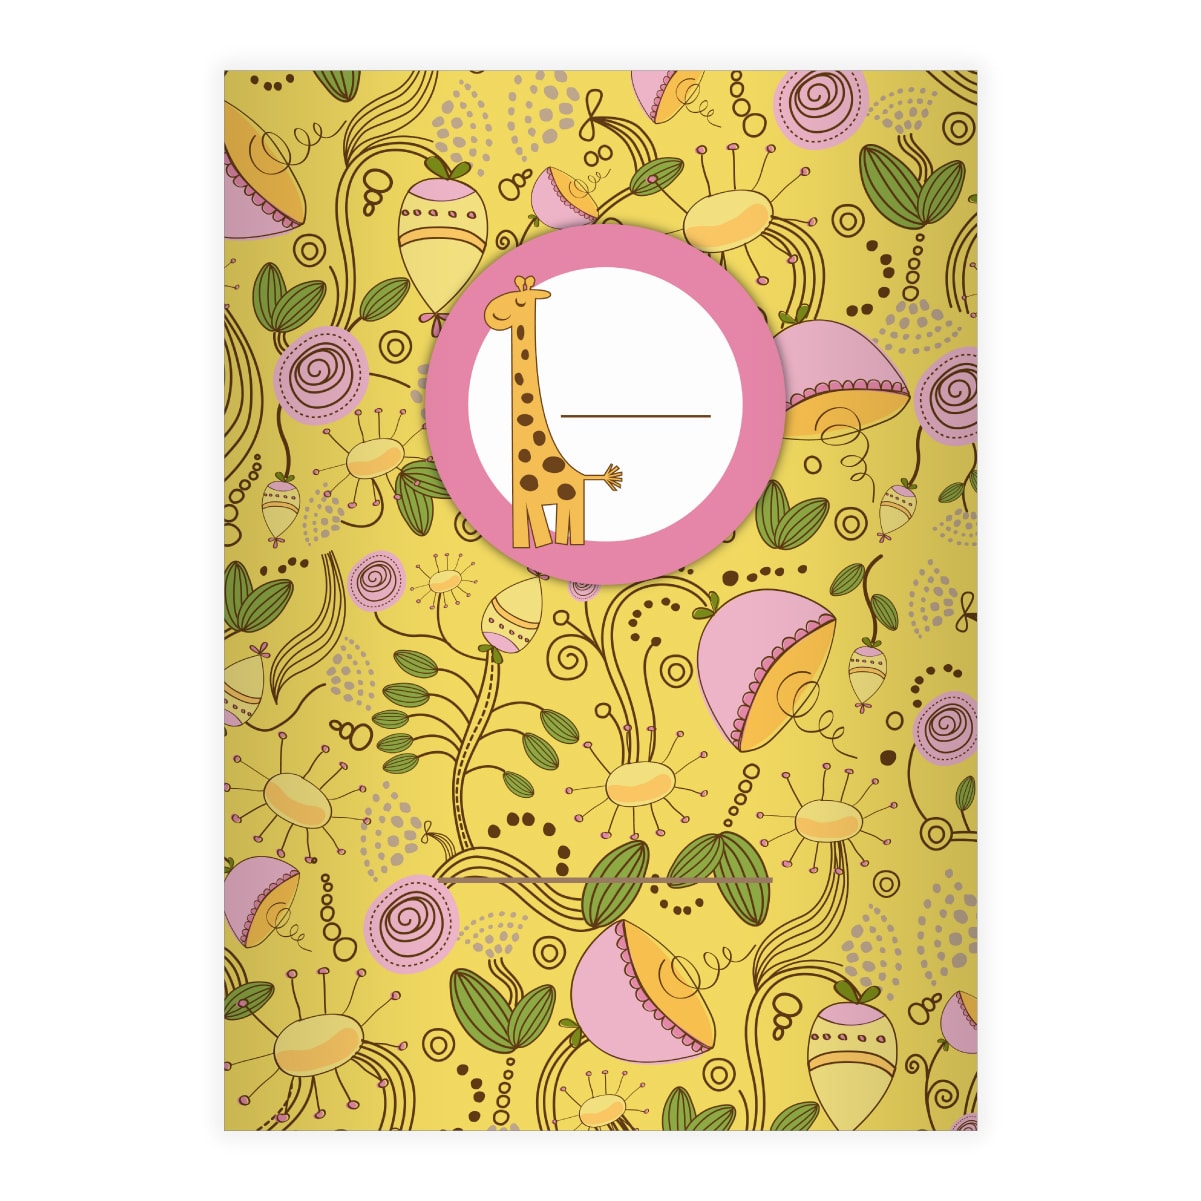 Kartenkaufrausch: Frisches Blüten Notizheft/ Schulheft aus unserer Kinder Papeterie in gelb